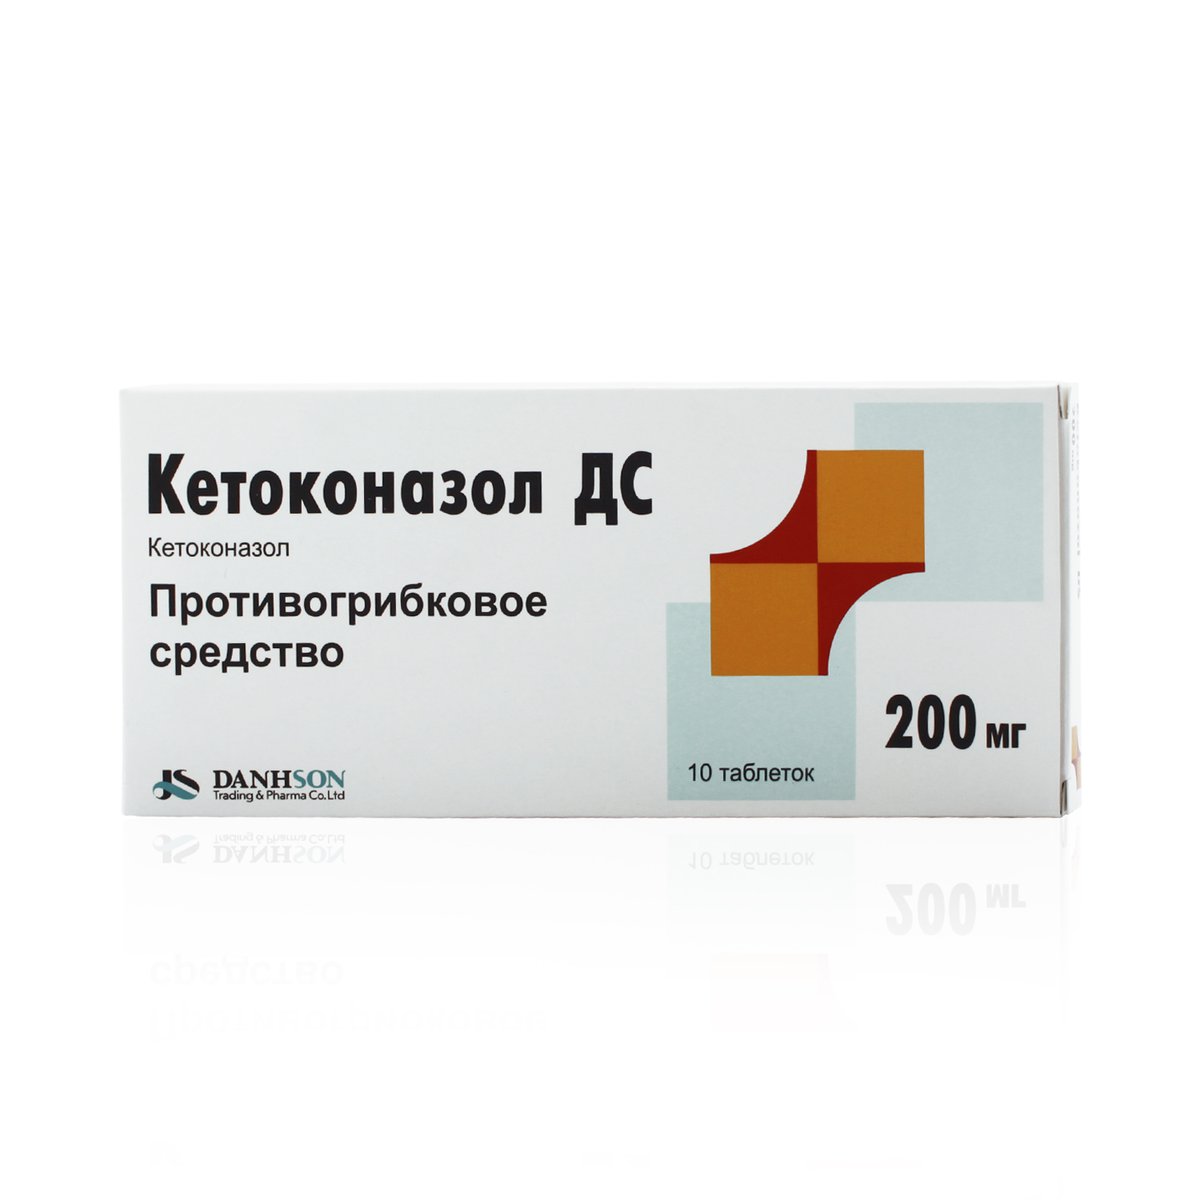 Кетоконазол дс (таблетки, 10 шт, 200 мг) - цена,  онлайн  .